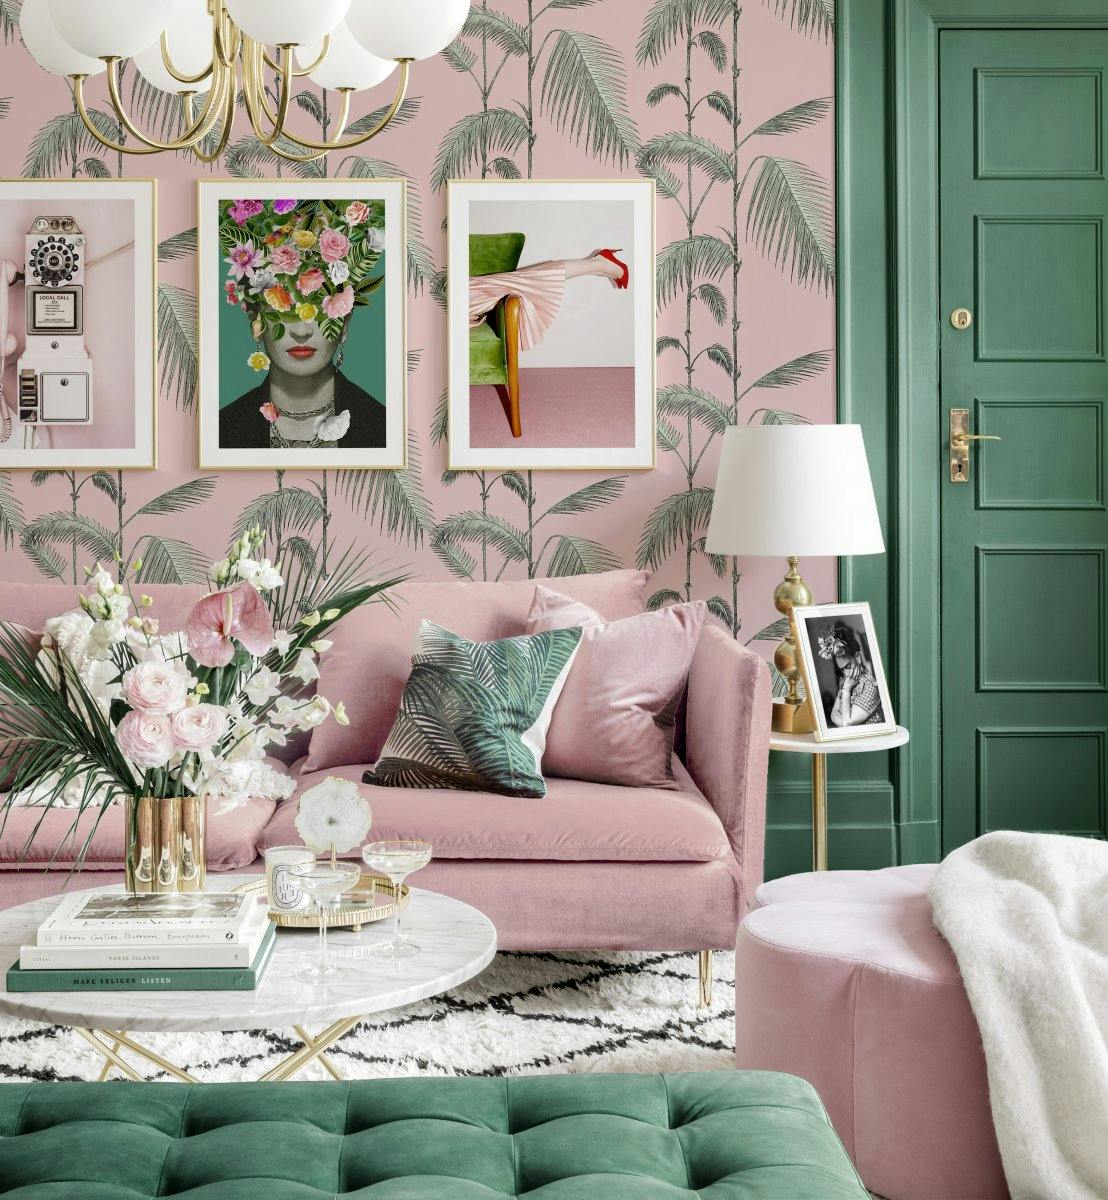 Gute Laune Bilderwand Chinoiserie Frida Kahlo Bilder Wohnzimmer grün rosa